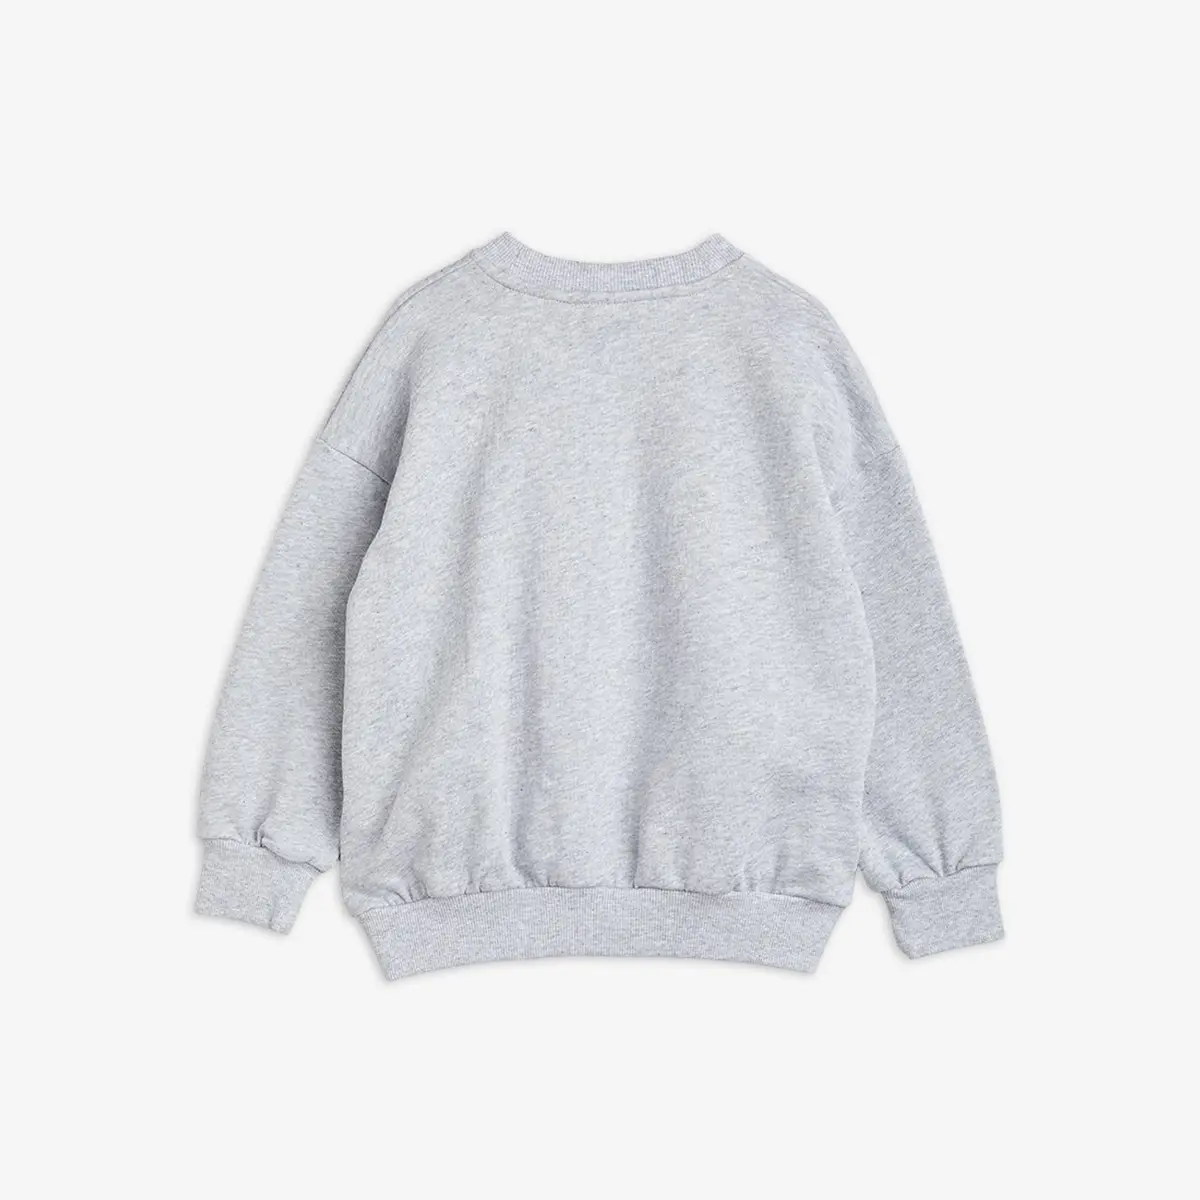 Ritzratz Sweatshirt Grey melange-image-1